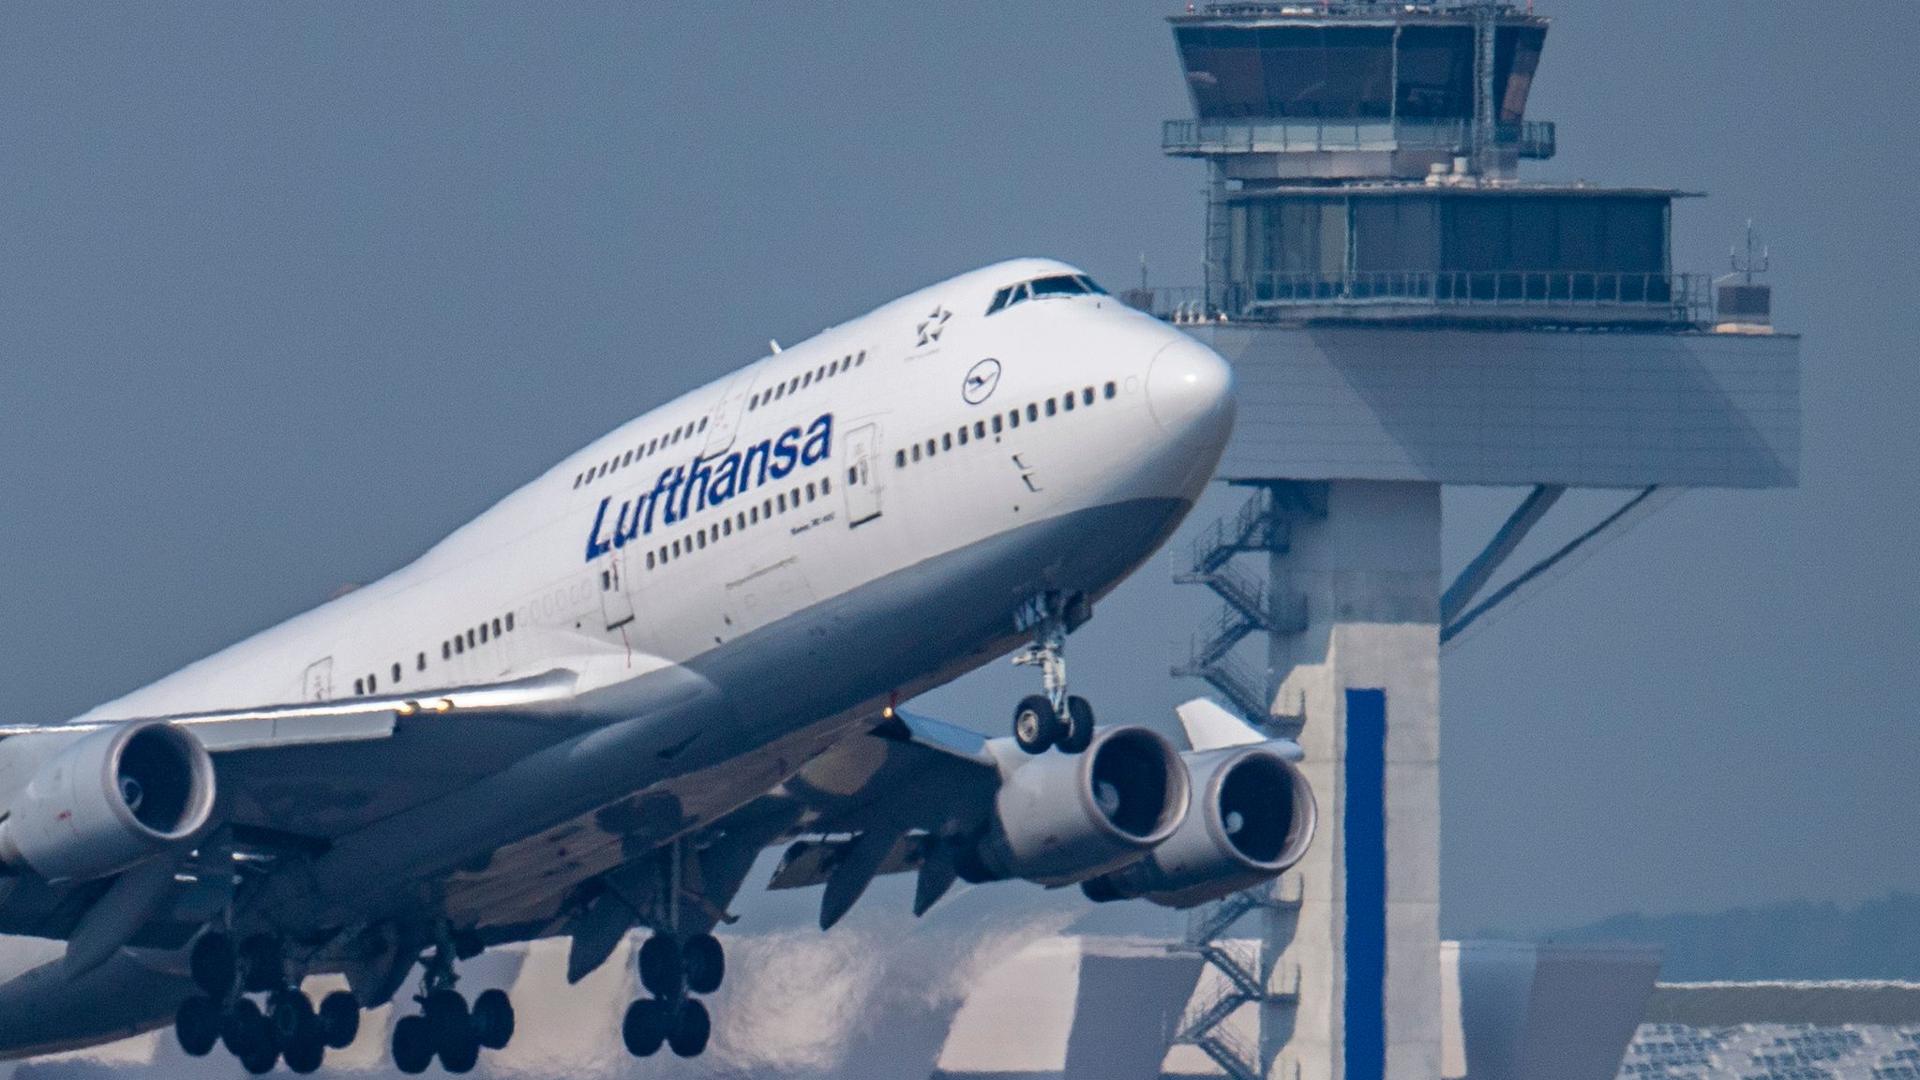 Eine Passagiermaschine vom Typ Boeing 747 der Lufthansa startet vor dem Tower des Flughafens Frankfurt zu einem Transatlantikflug.